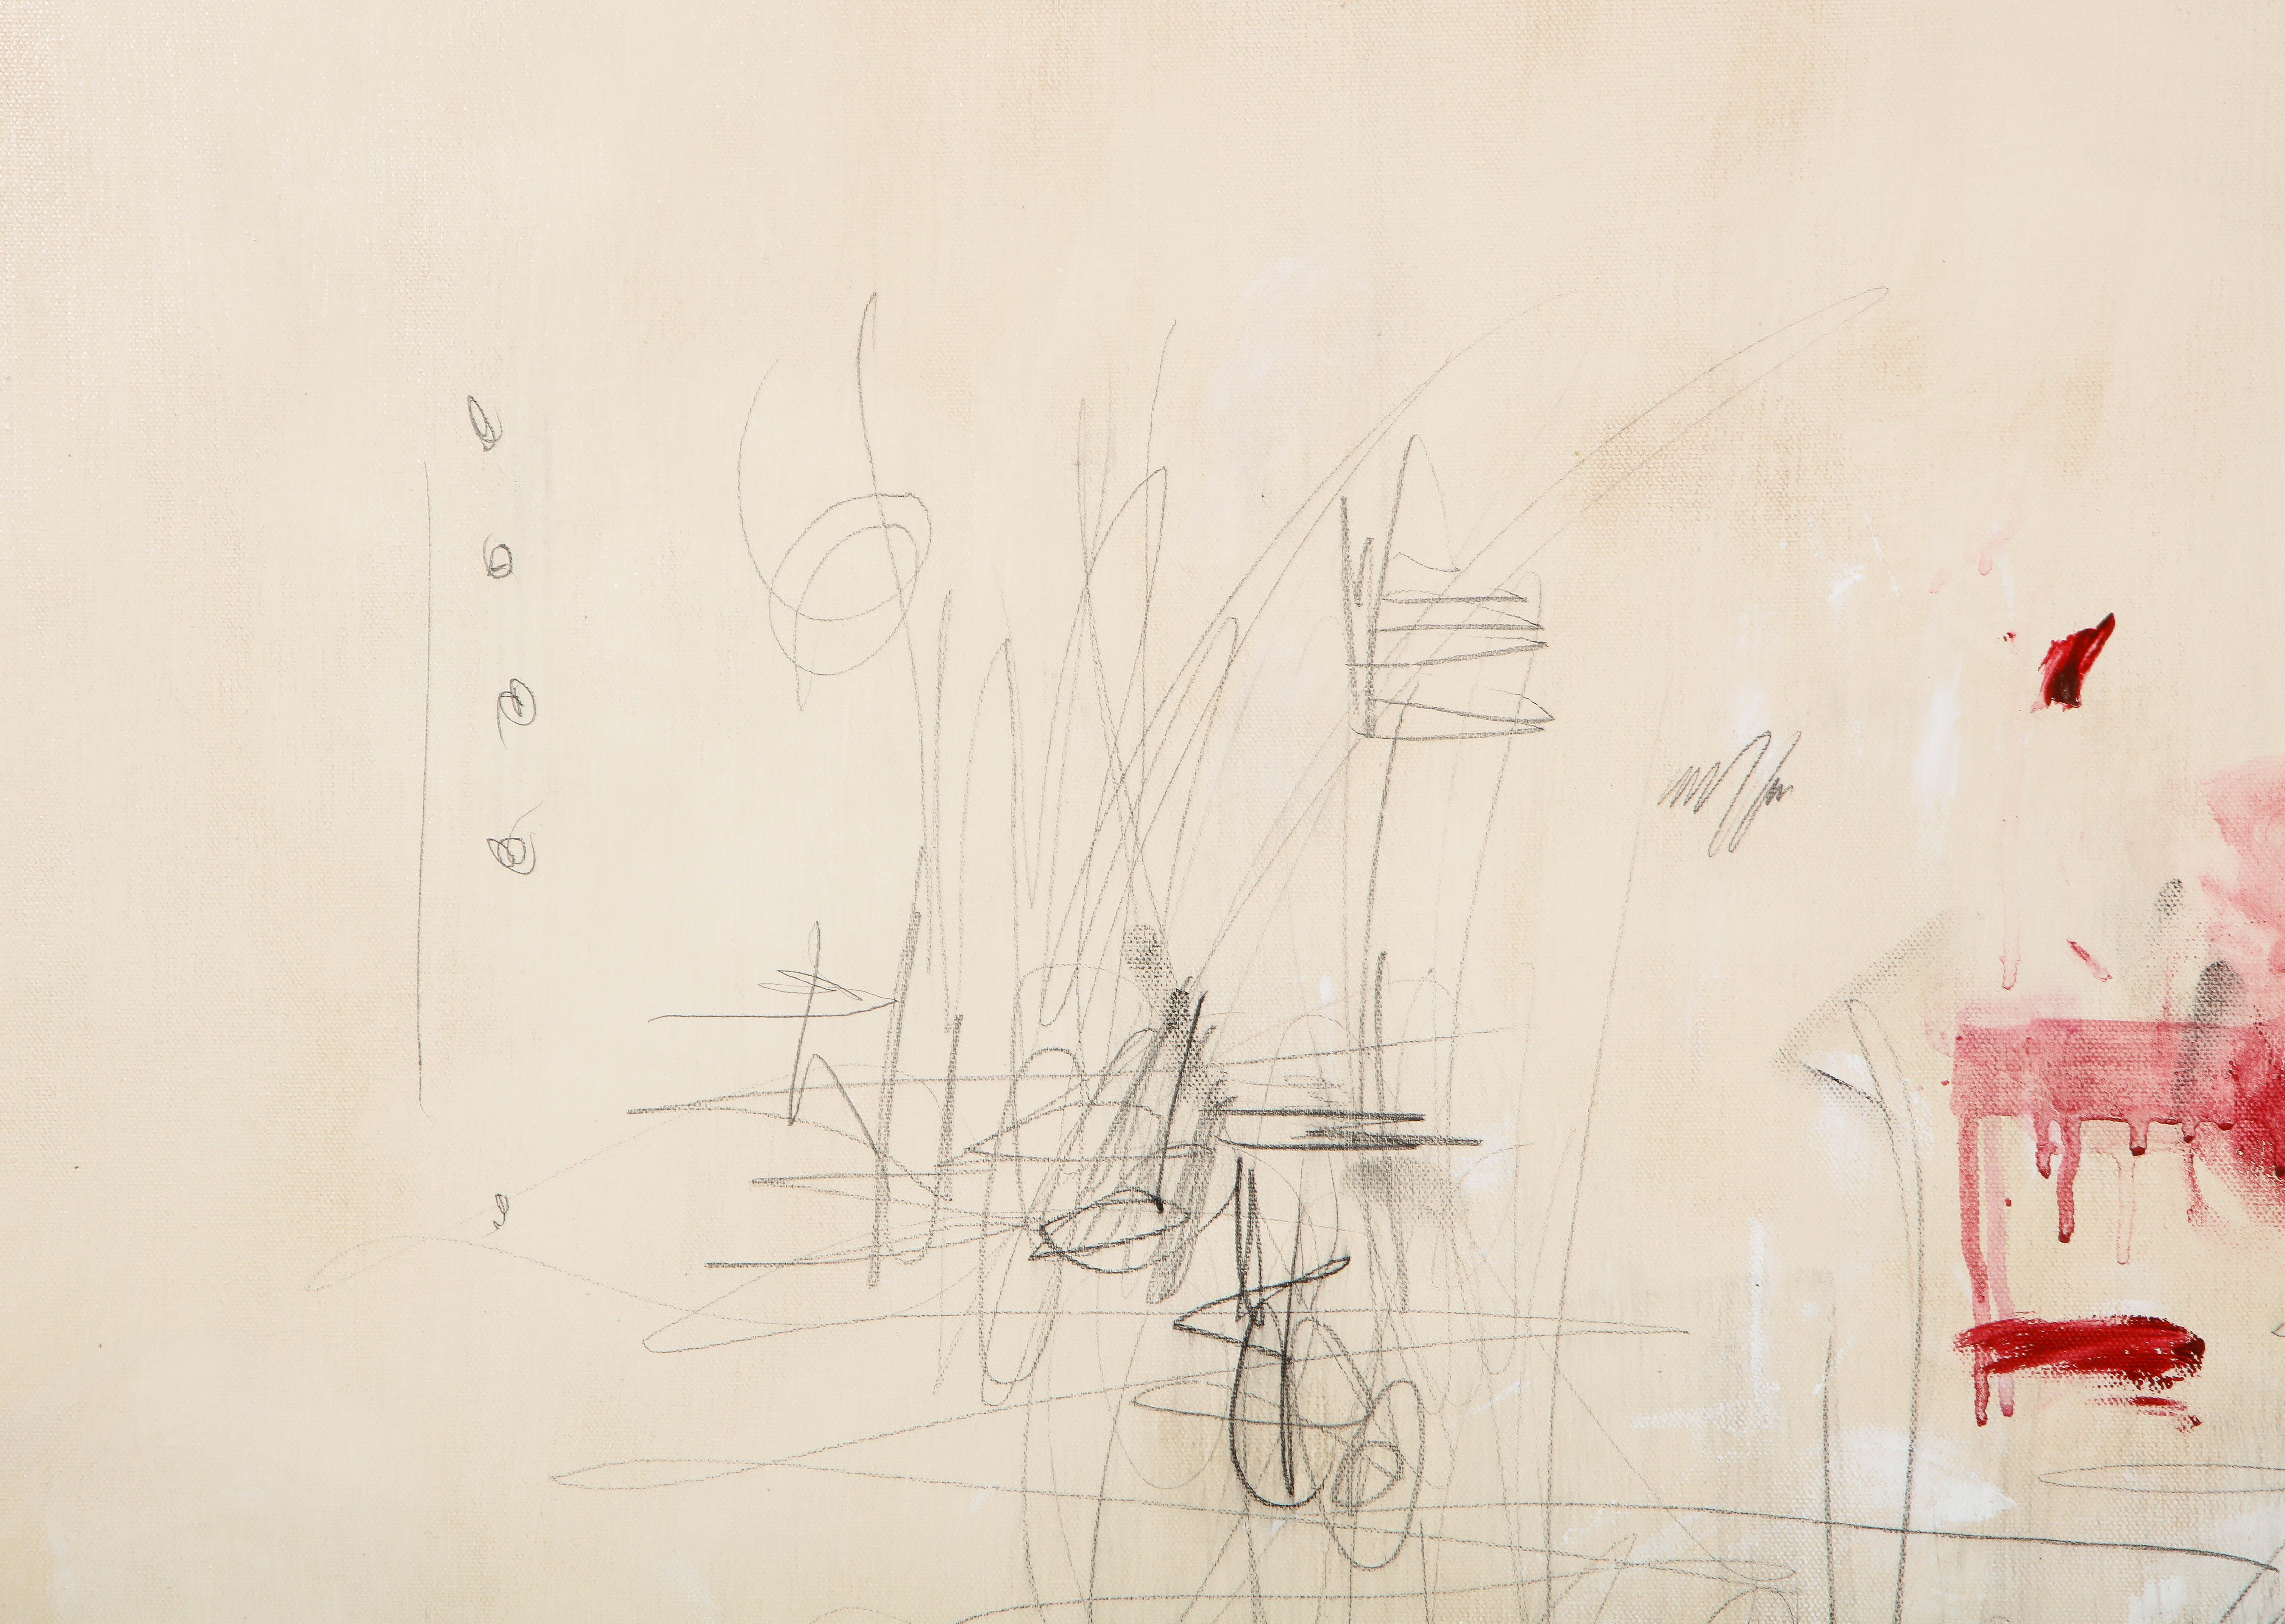 Großes Gemälde „Amore“ in Elfenbein-:: Weiß-:: Schwarz- und Rottönen:: 2::44 m x 3::66 m 4